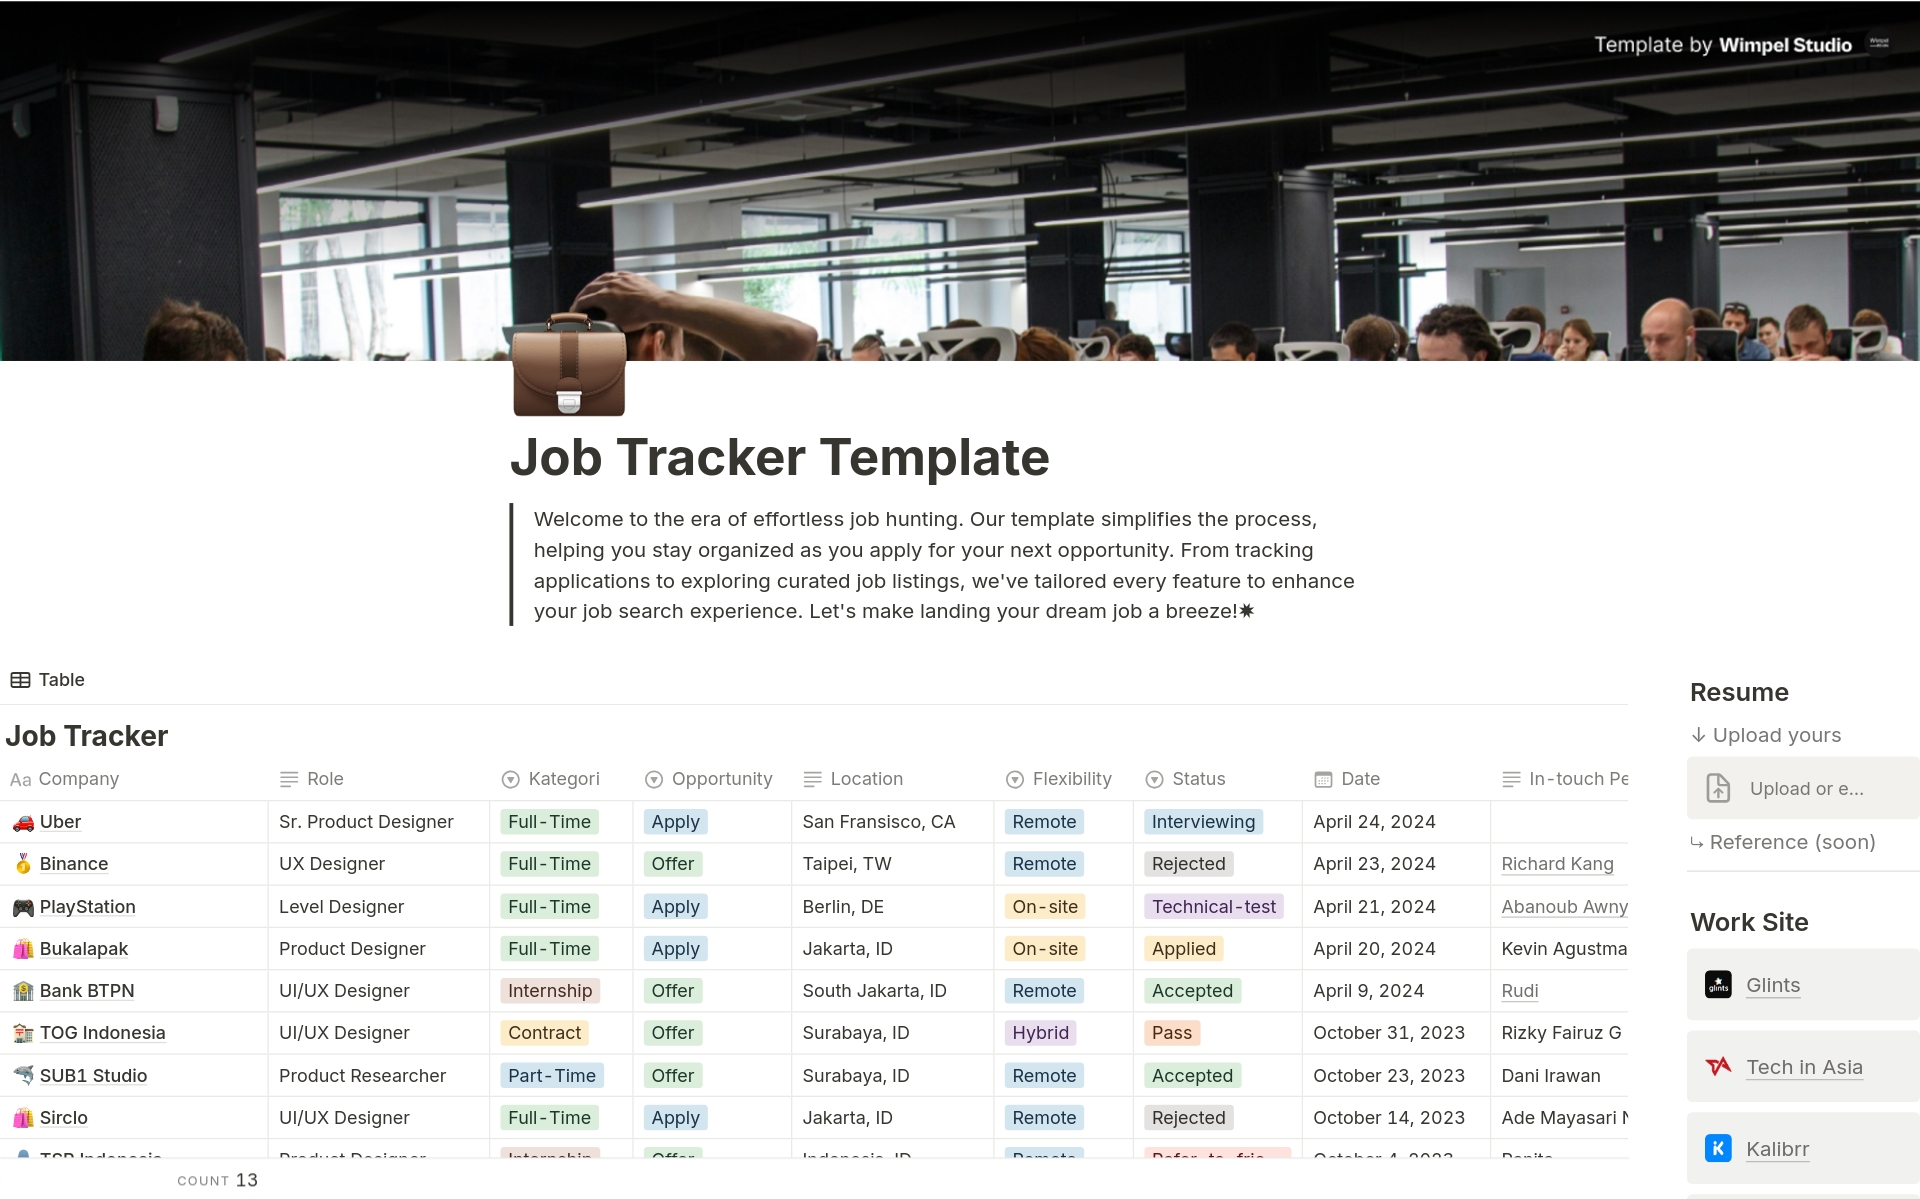 Uma prévia do modelo para Job Application Tracker